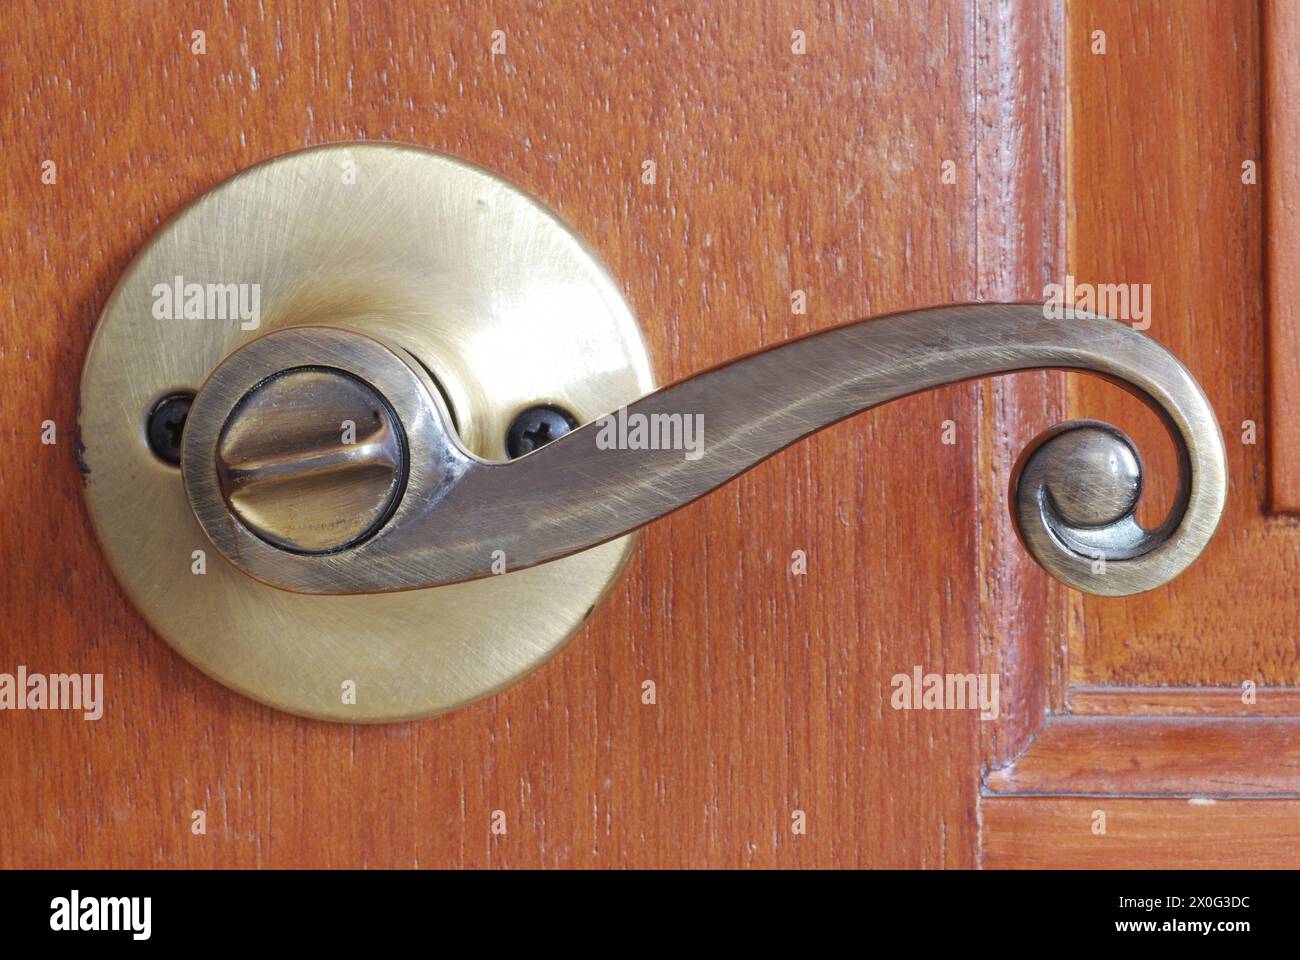 artistic bronze doorknob against wooden door Stock Photo